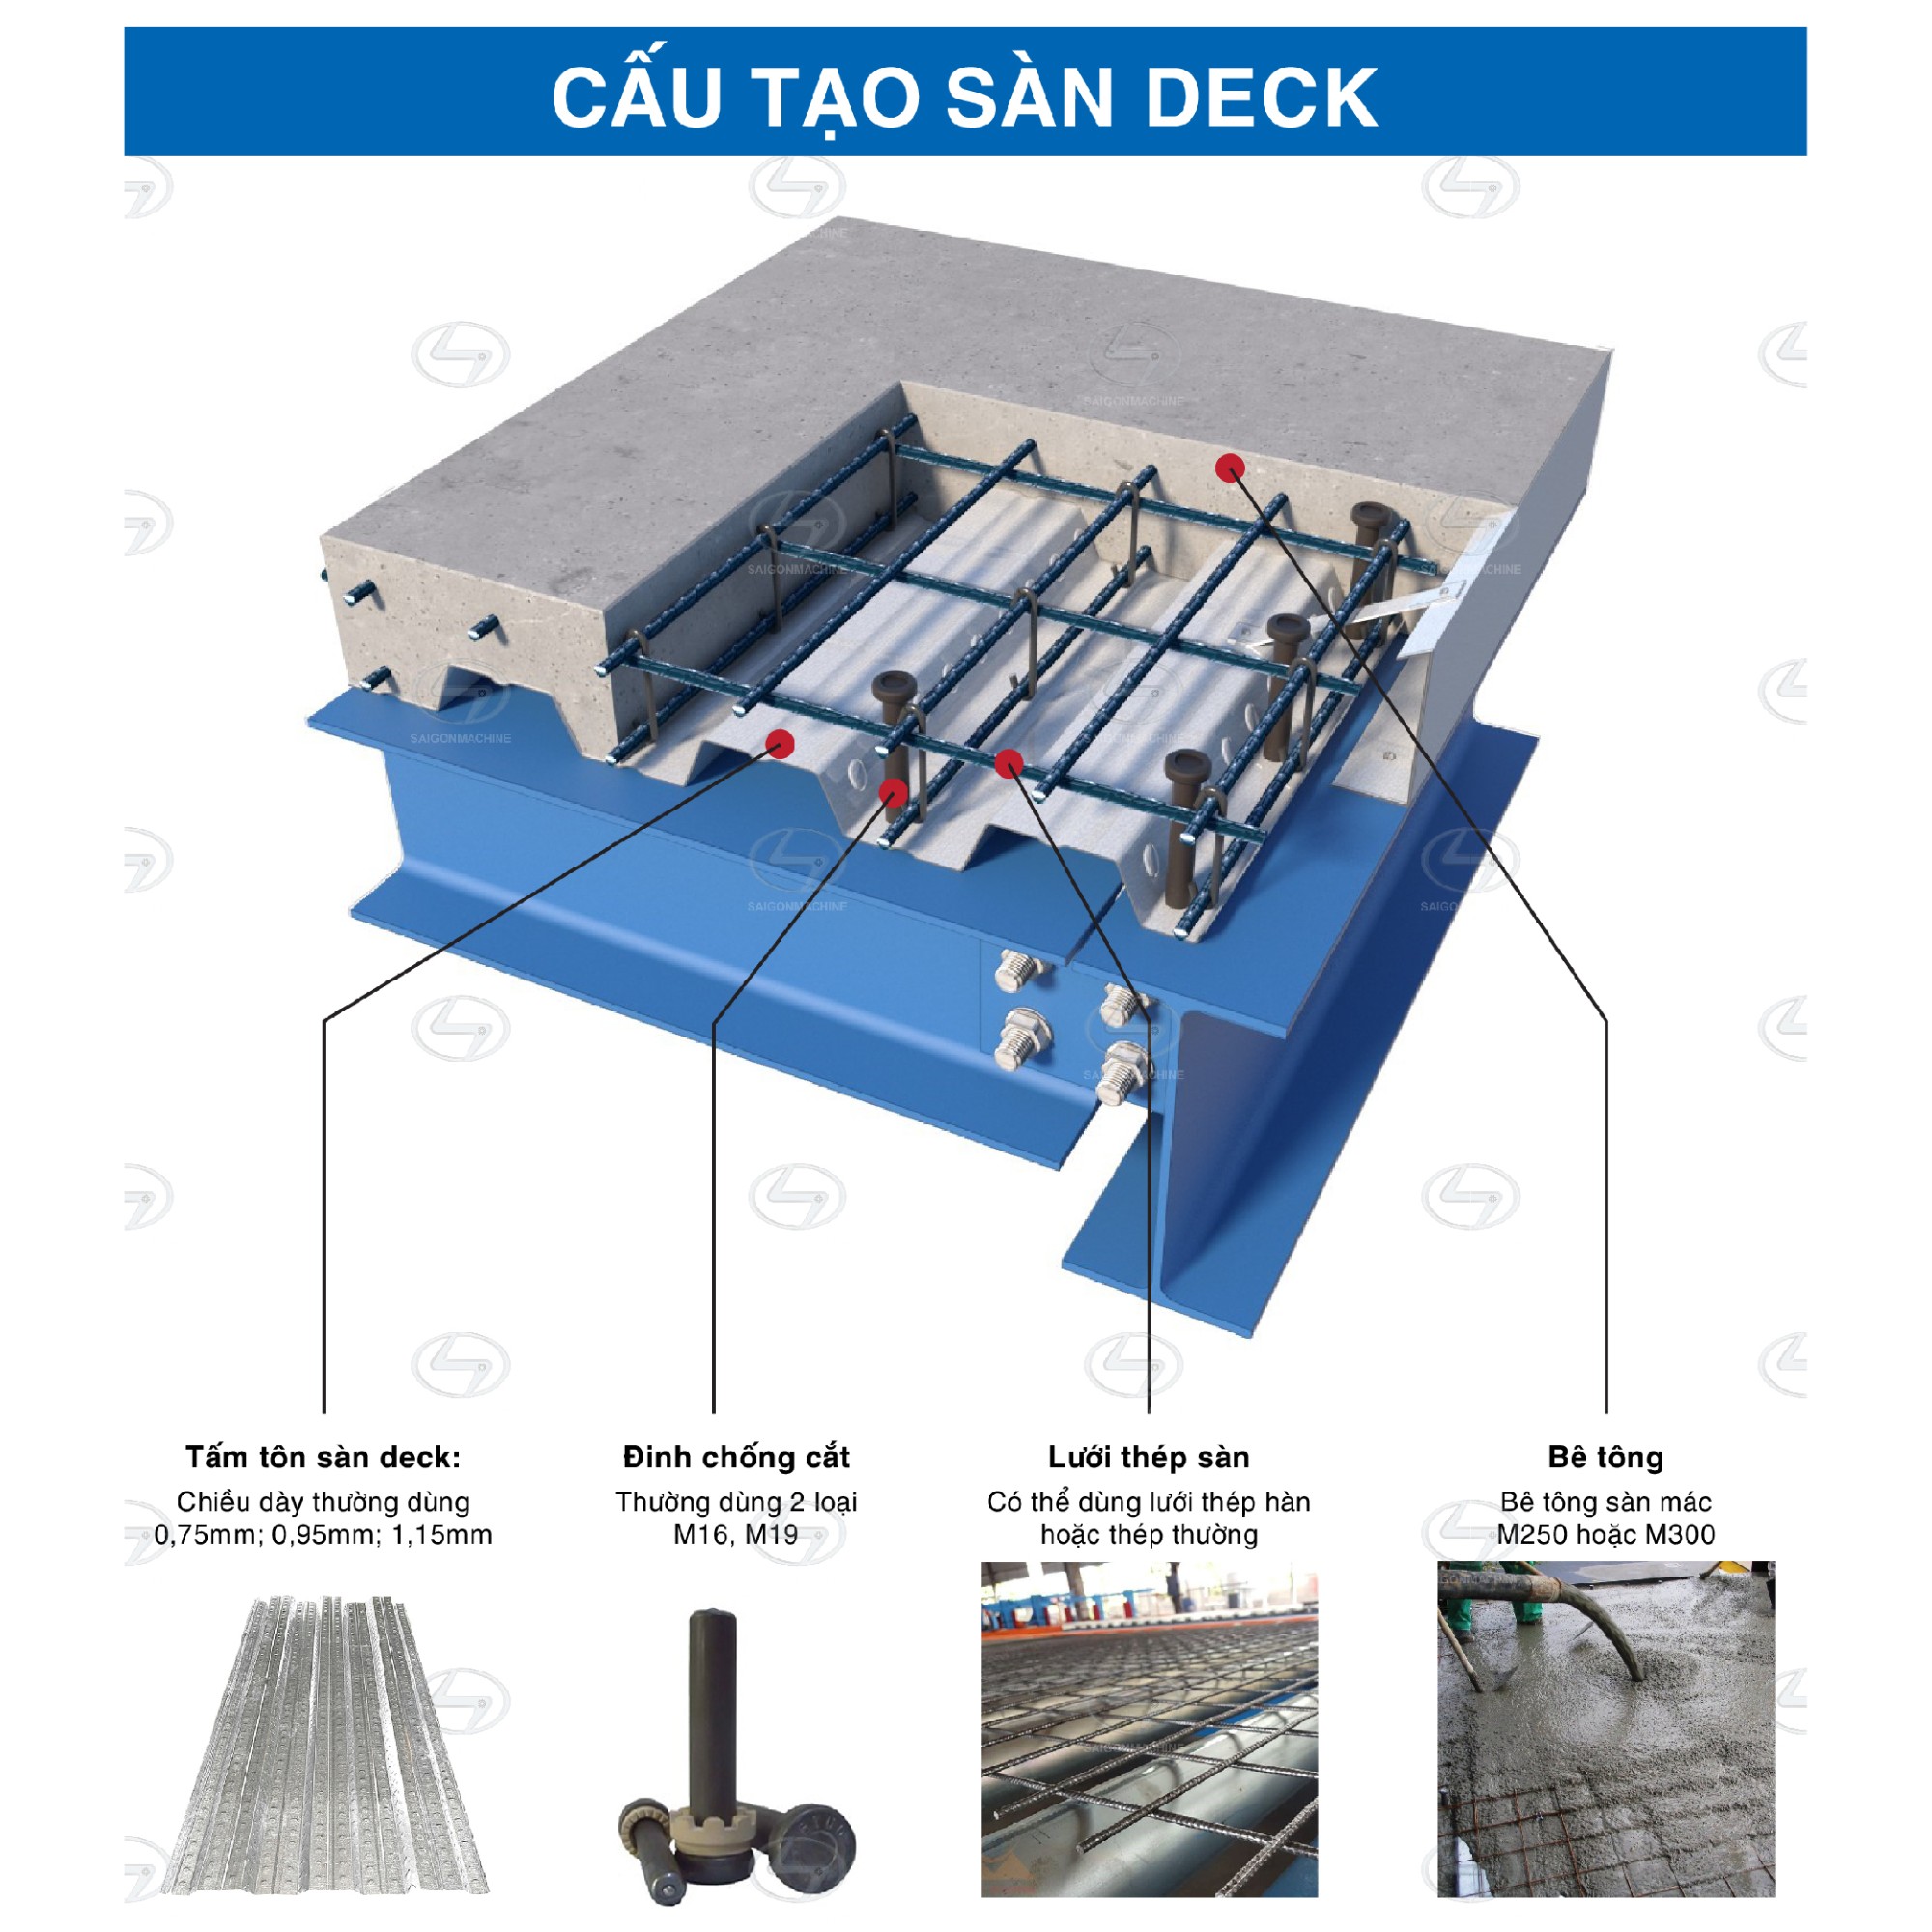 Máy cán tôn sàn Deck | Máy đổ sàn - H45 | H50 | H71 sản xuất thành các tấm sàn Deck được hiểu như là tấm sàn bằng tôn thép được liên kết trên hệ dầm kết cấu thép bằng các đinh hàn. Loại sàn này có tác dụng thay thế cốp pha sàn mà không cần cây chống.